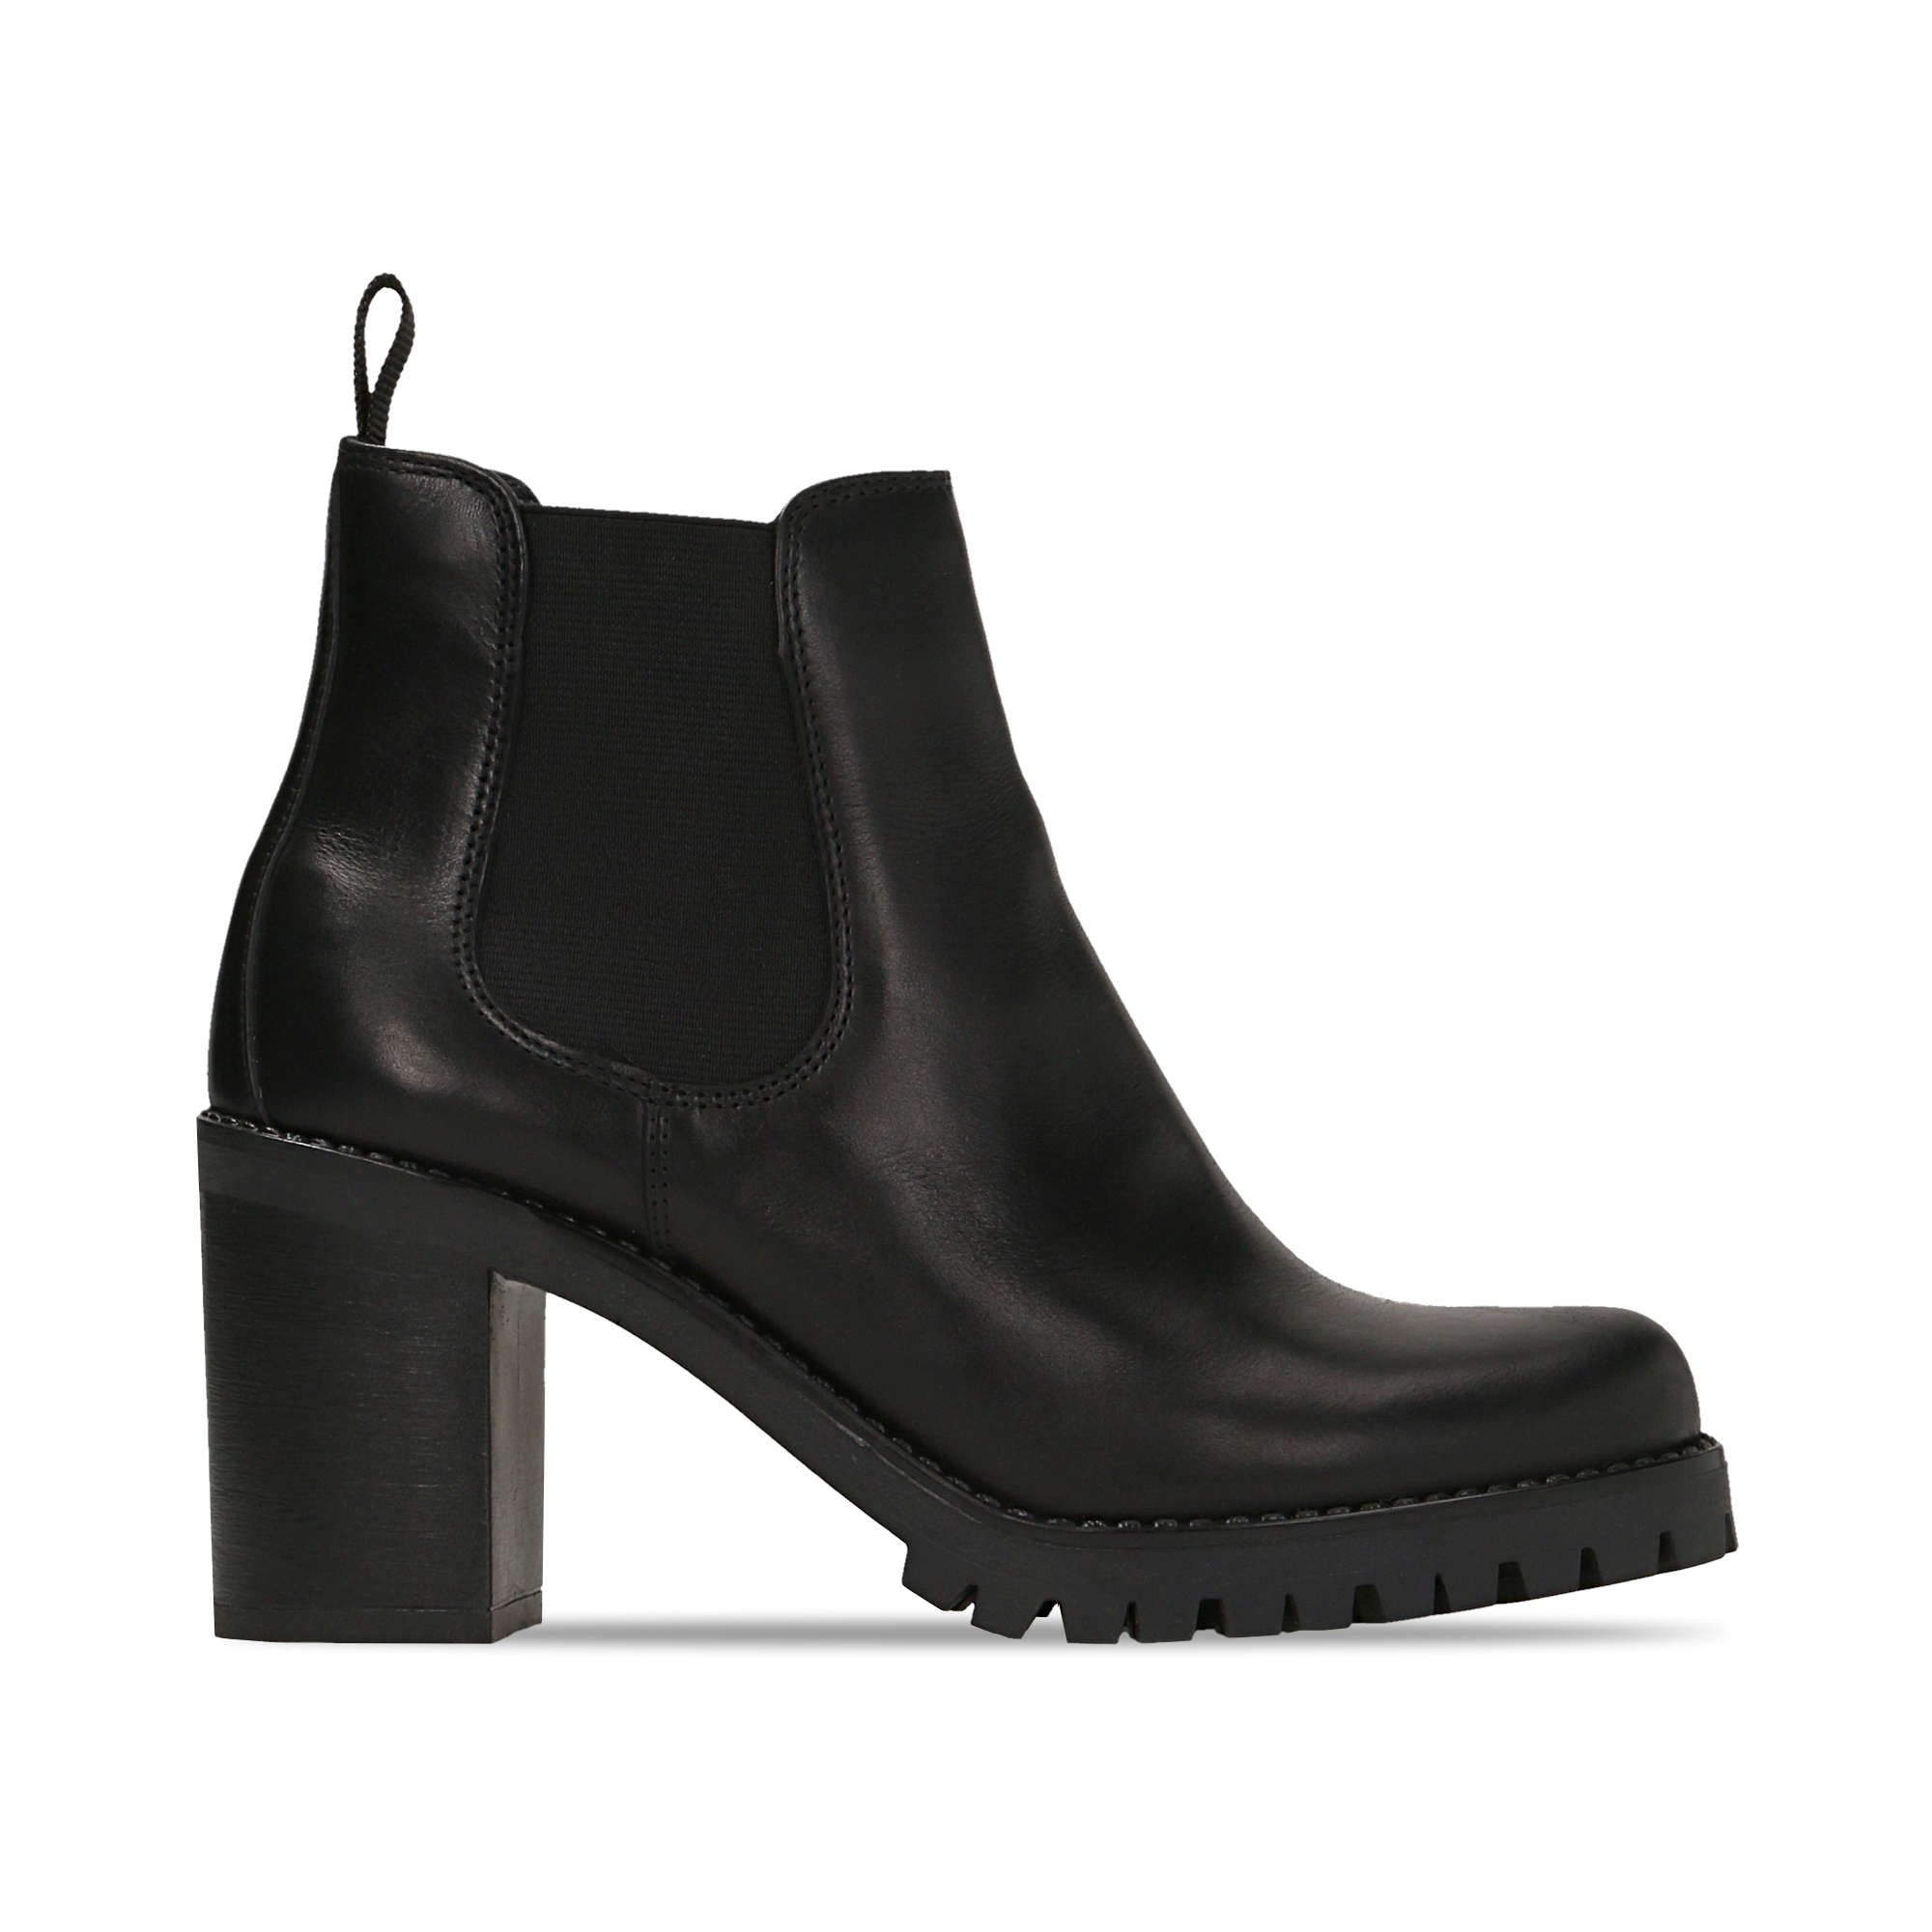 Chelsea Boots neri in vera pelle, tacco alto 7,5 cm